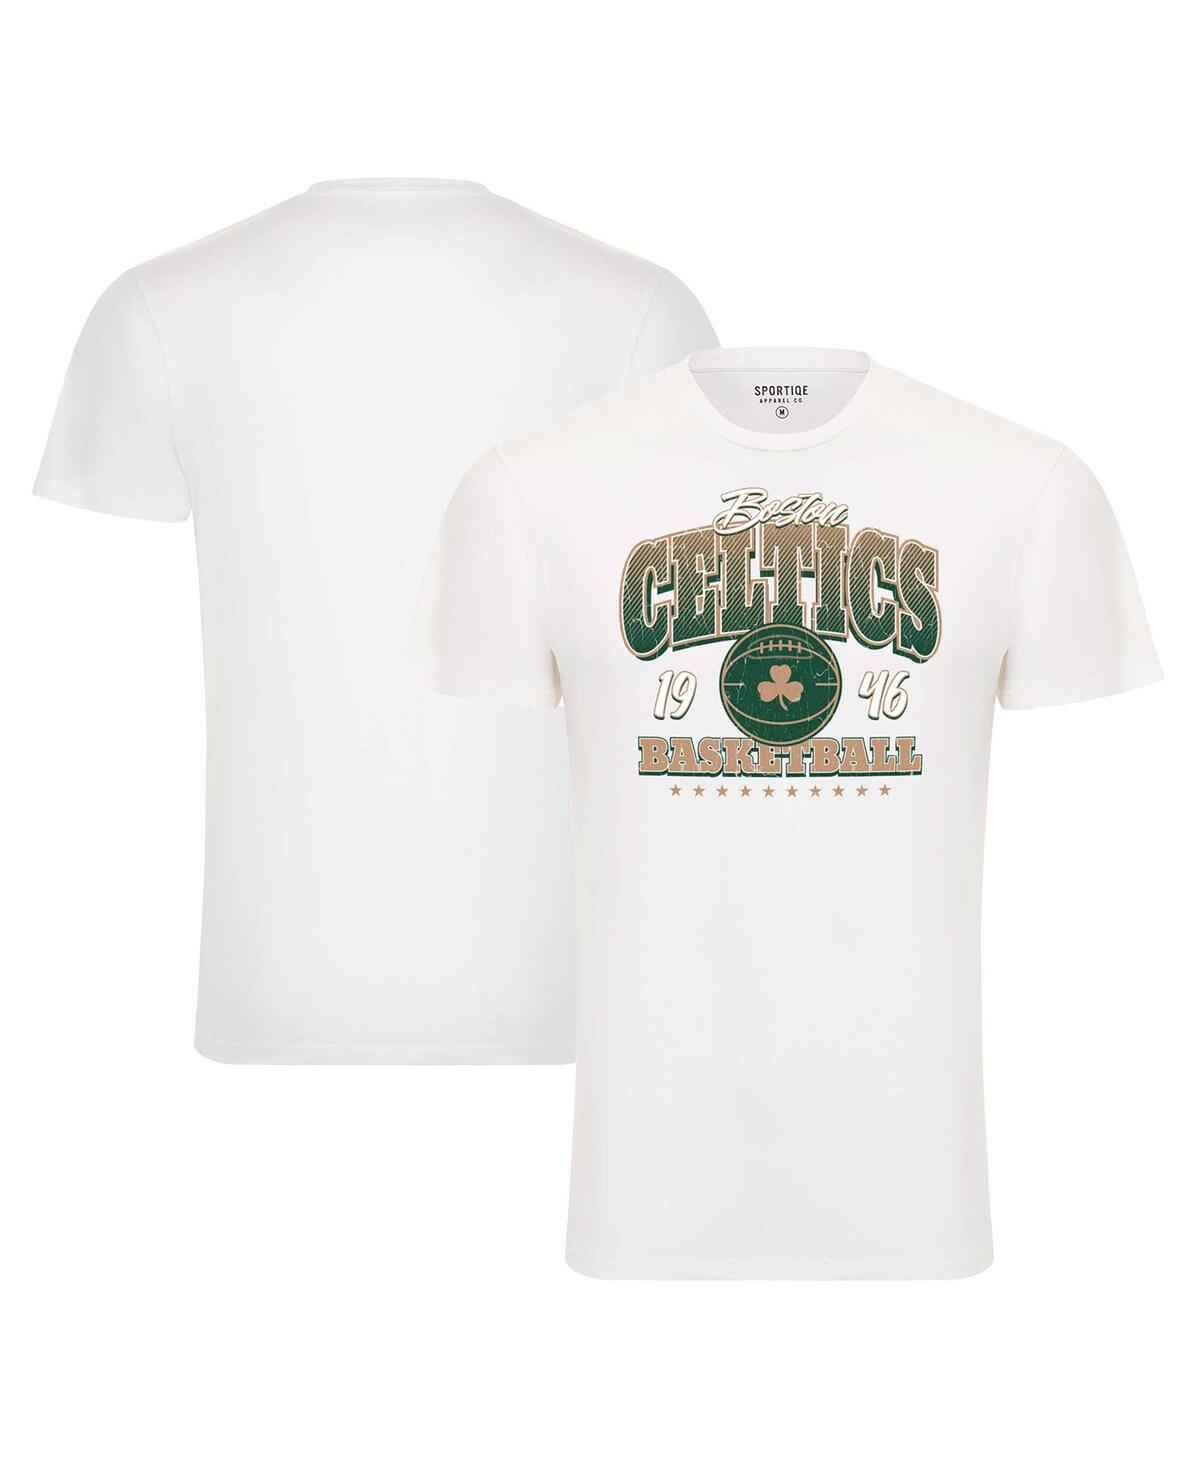 Men's and Women's White Boston Celtics Bingham Super Soft T-Shirt - White